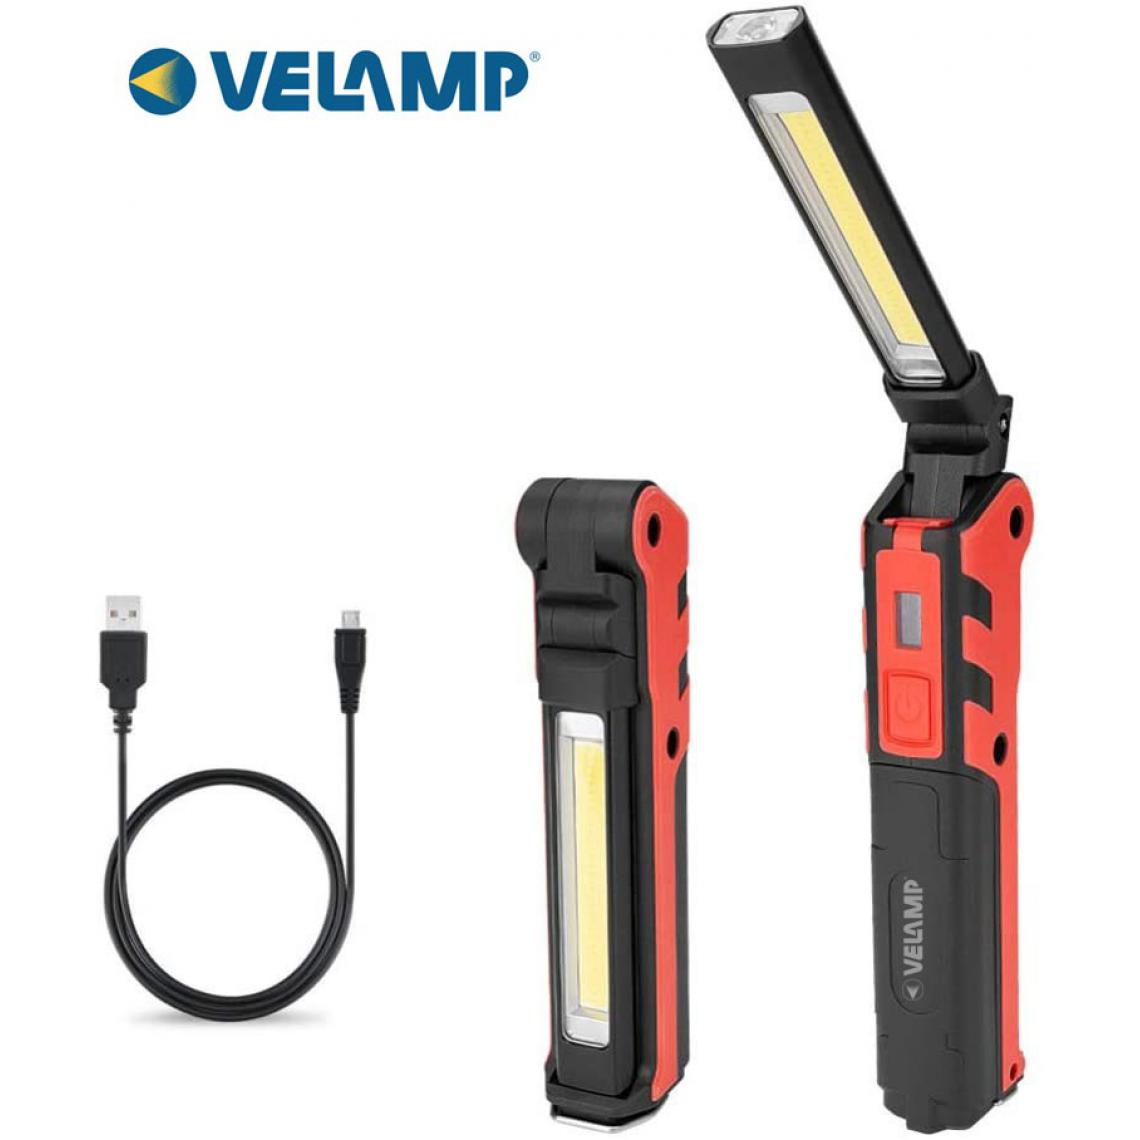 Velamp - KUBRIK: lampe d'inspection rechargeable + torche. Multifonctions - Lampes portatives sans fil